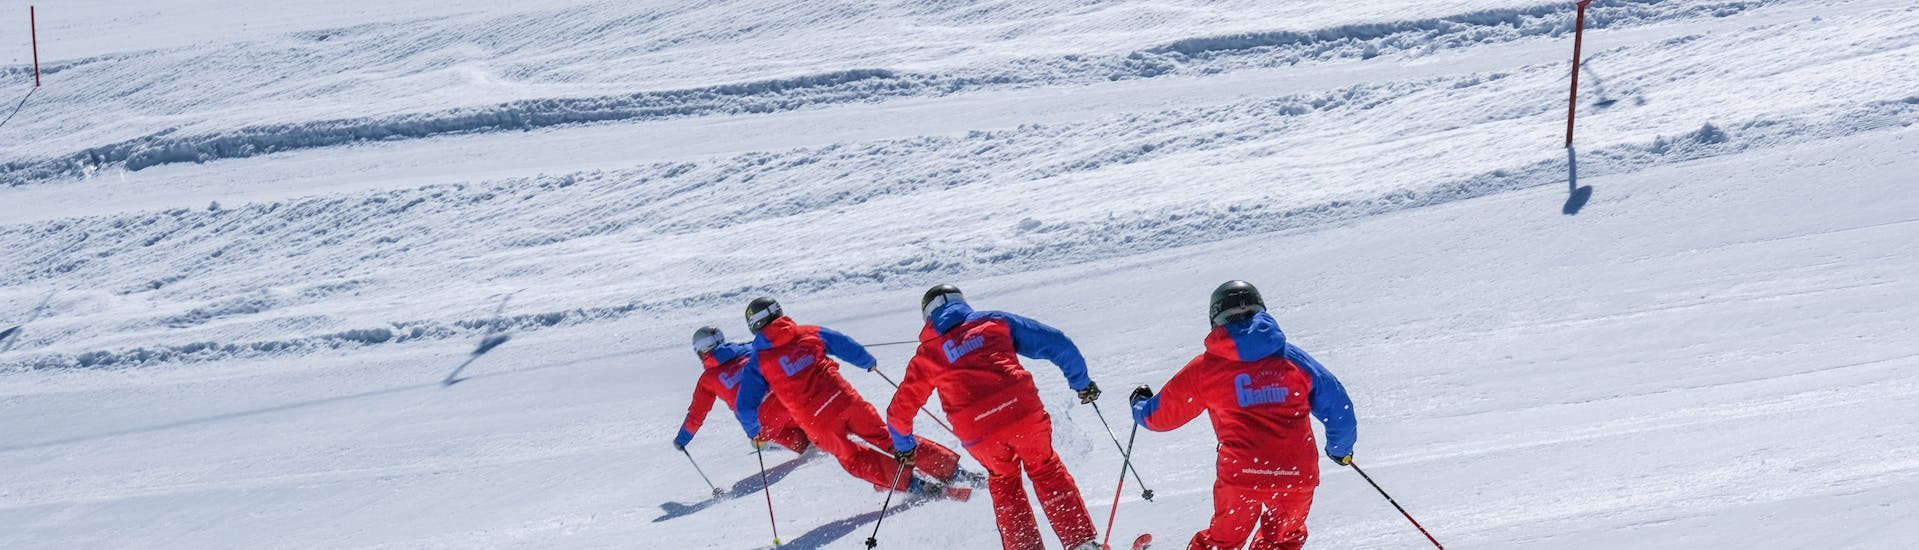 Tieners luisteren naar de skileraar in de skicursus voor tieners (14-17 jaar) - beginners.